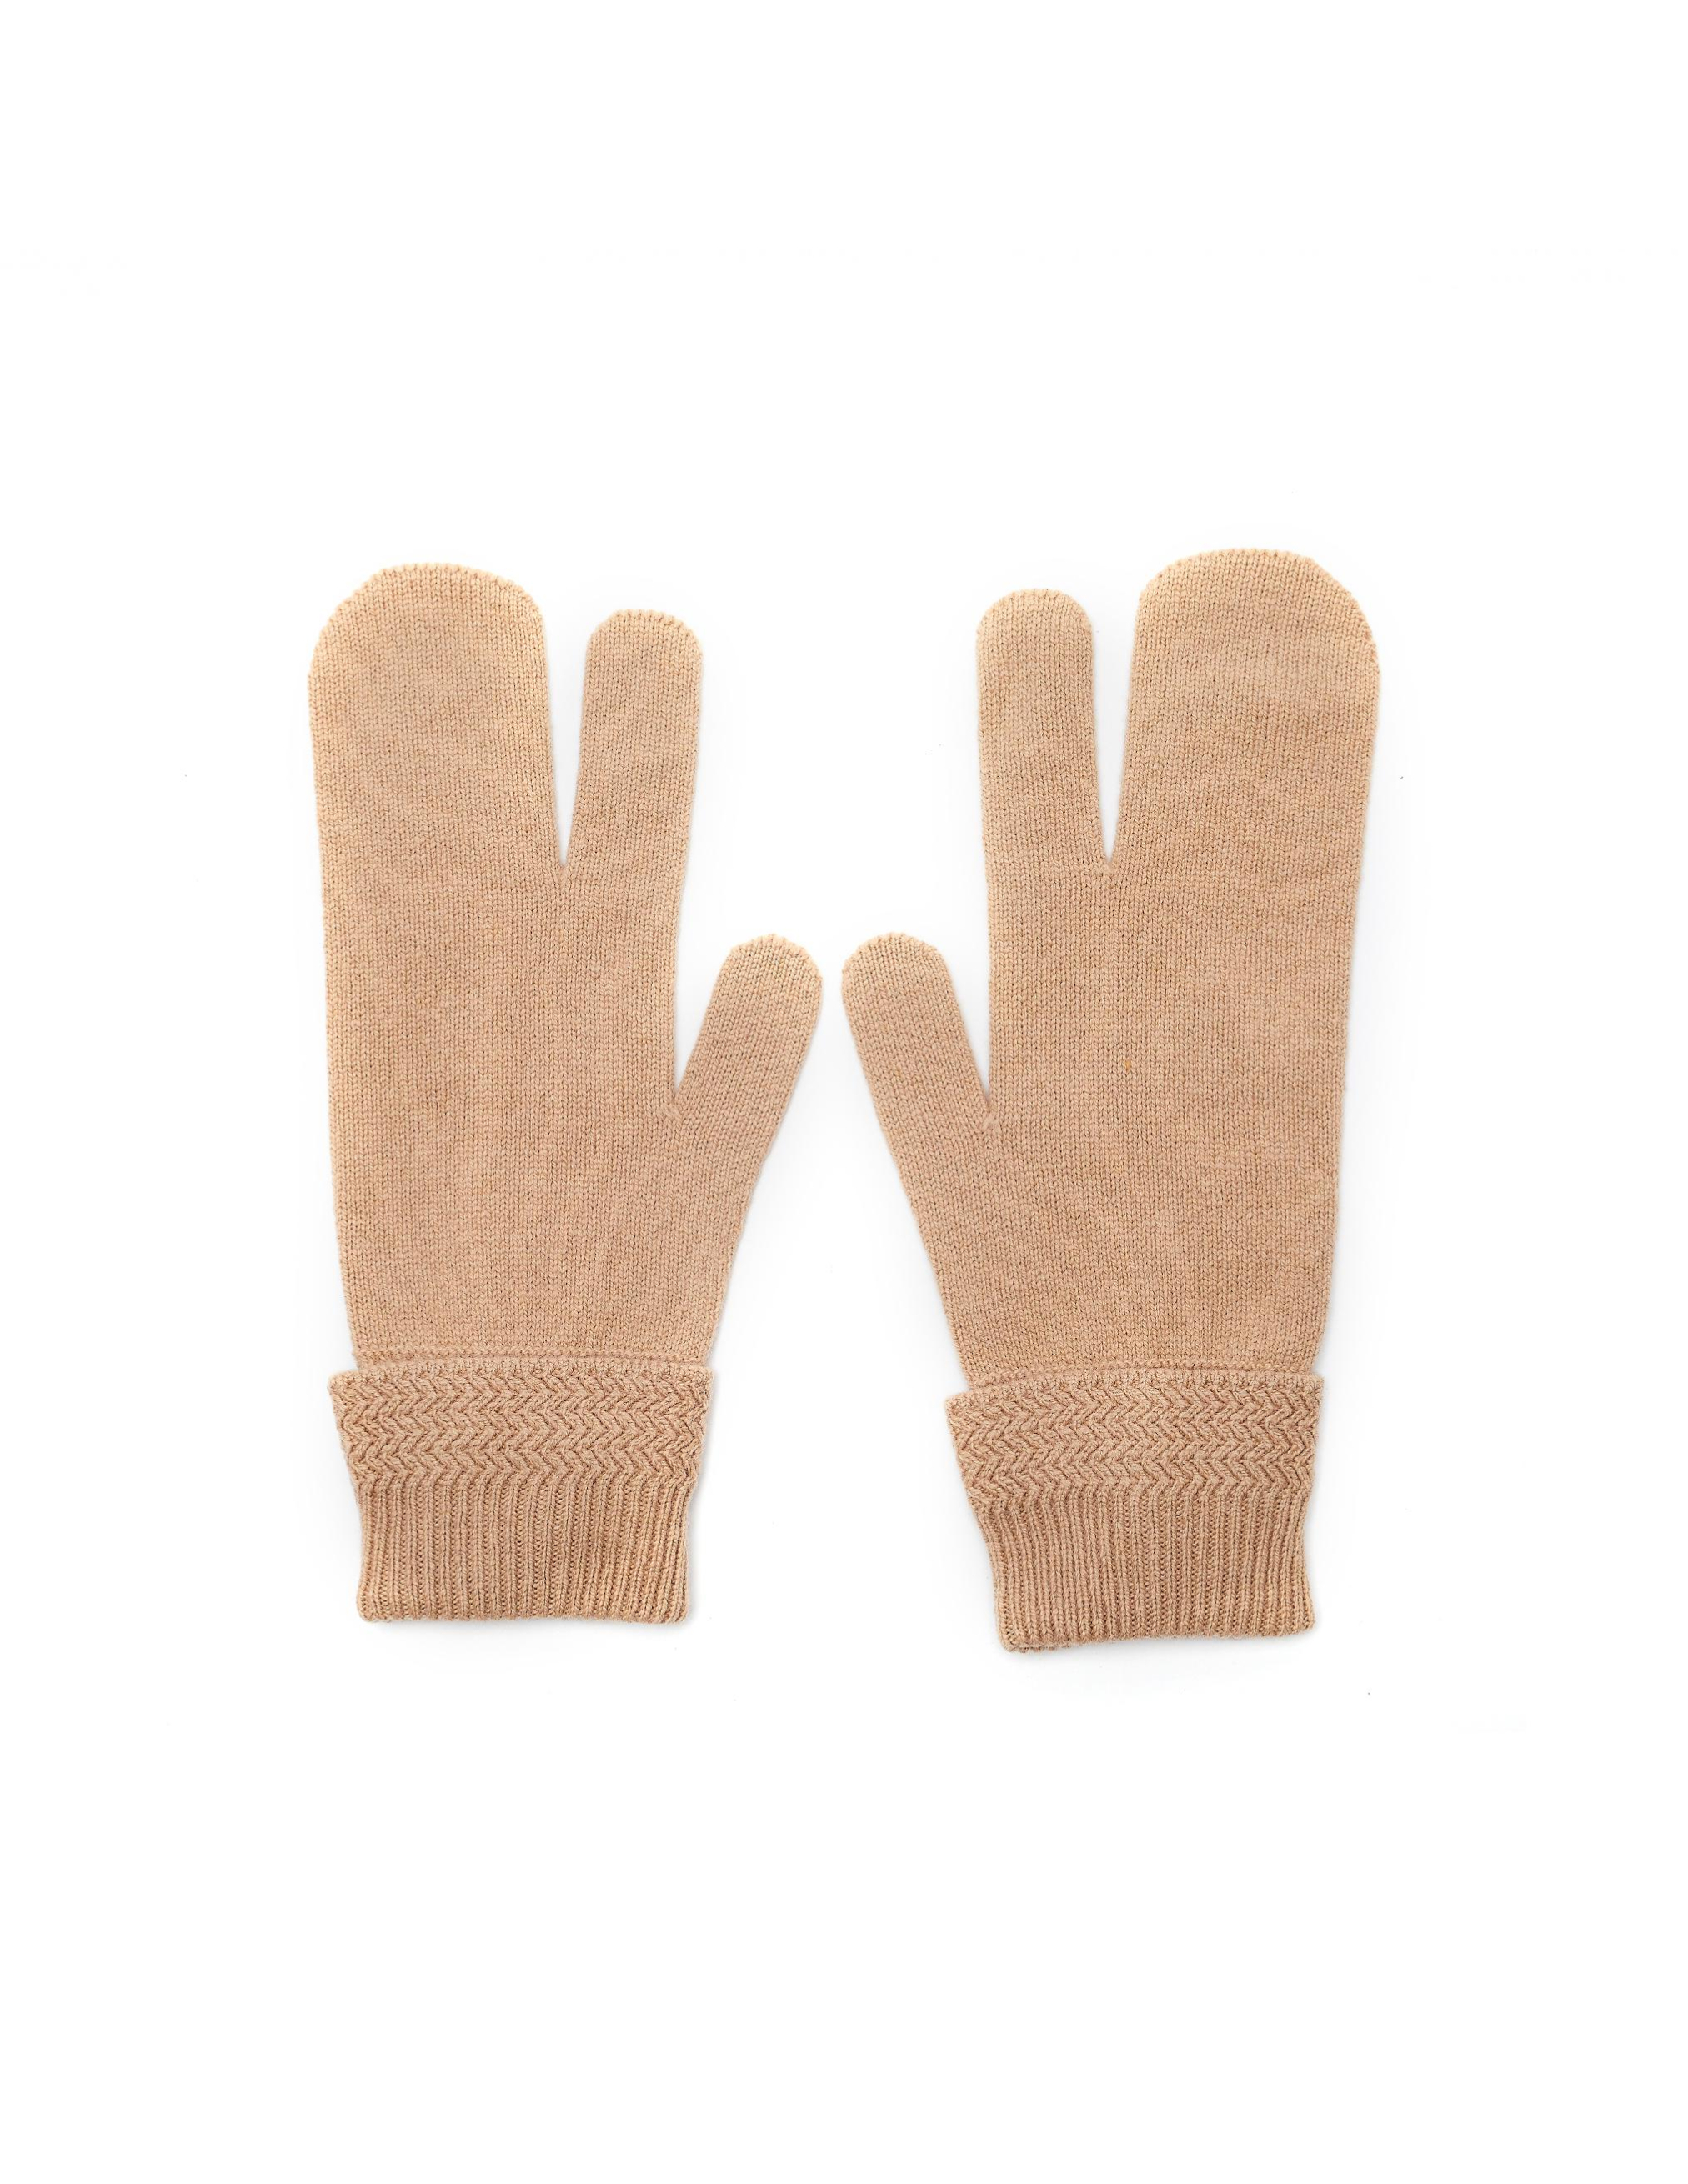 Бежевые перчатки из шерсти и кашемира Maison Margiela S50TS0007/S16825/cml, размер M;L S50TS0007/S16825/cml - фото 2